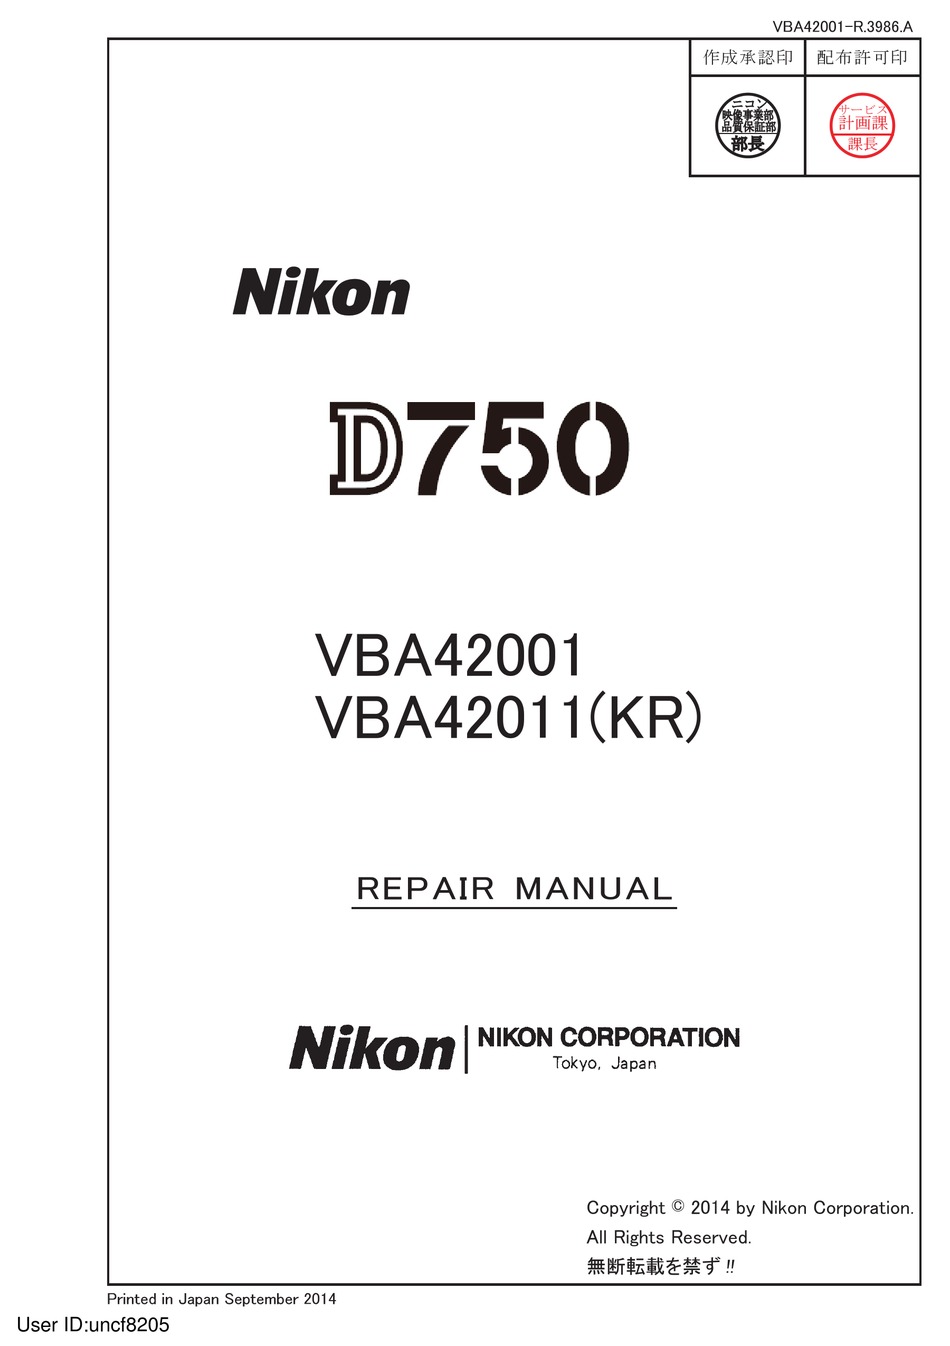 NIKON D750 REPAIR MANUAL Pdf Download | ManualsLib